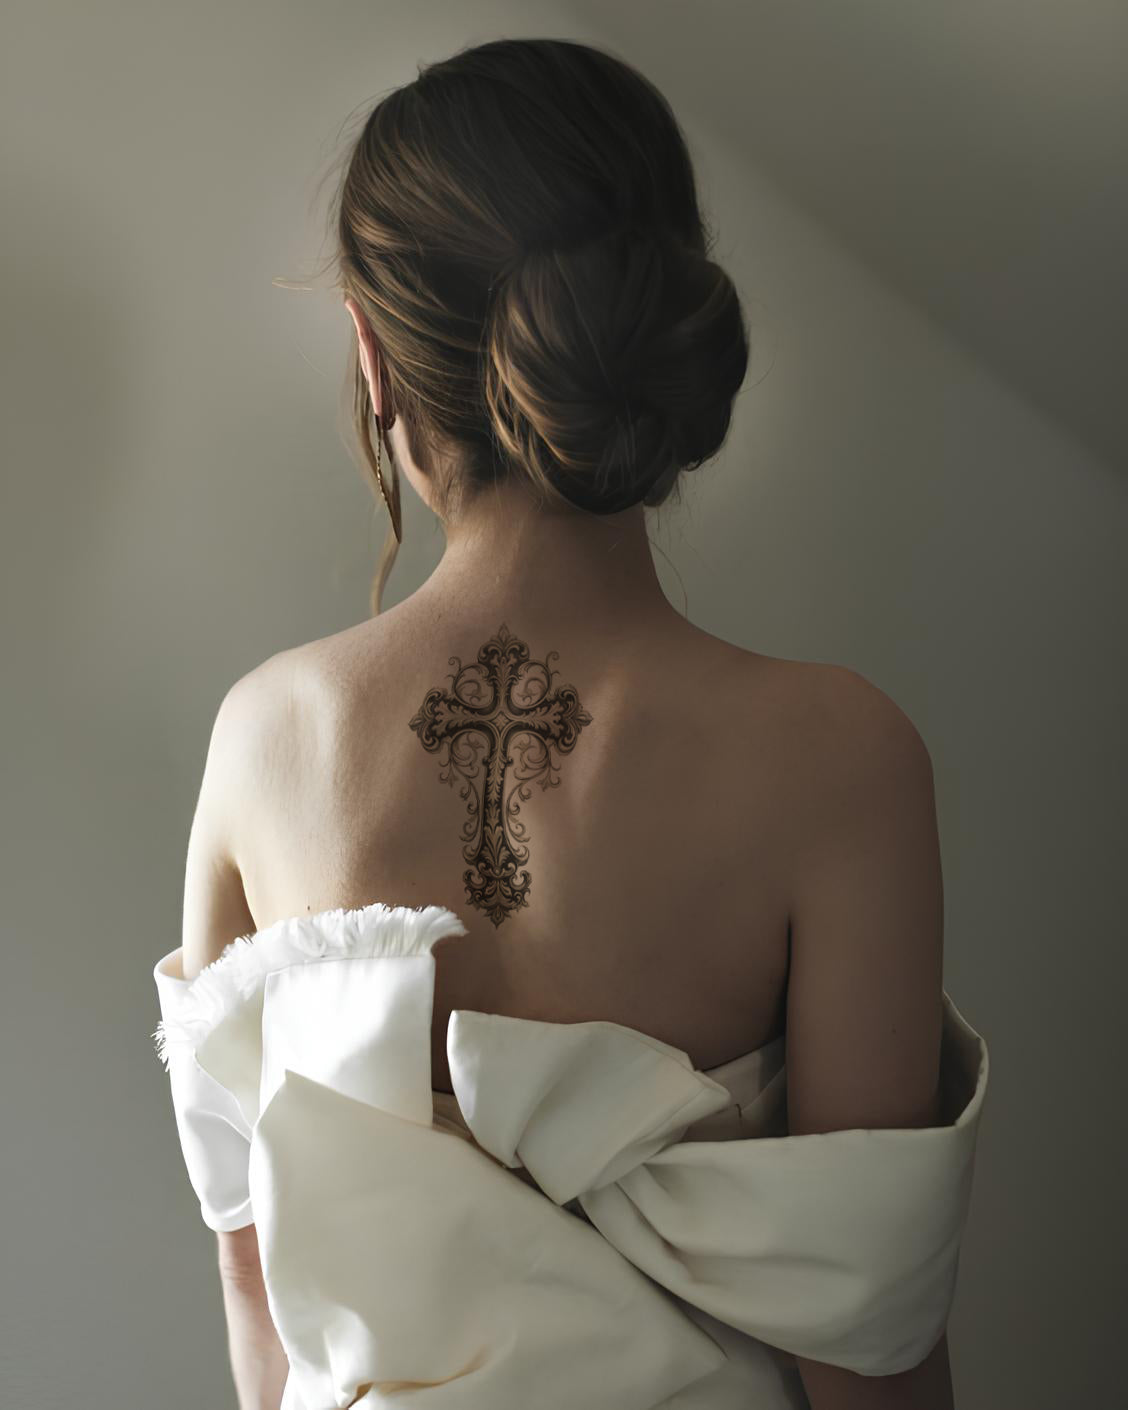 Conception de tatouage de croix baroque noir et gris